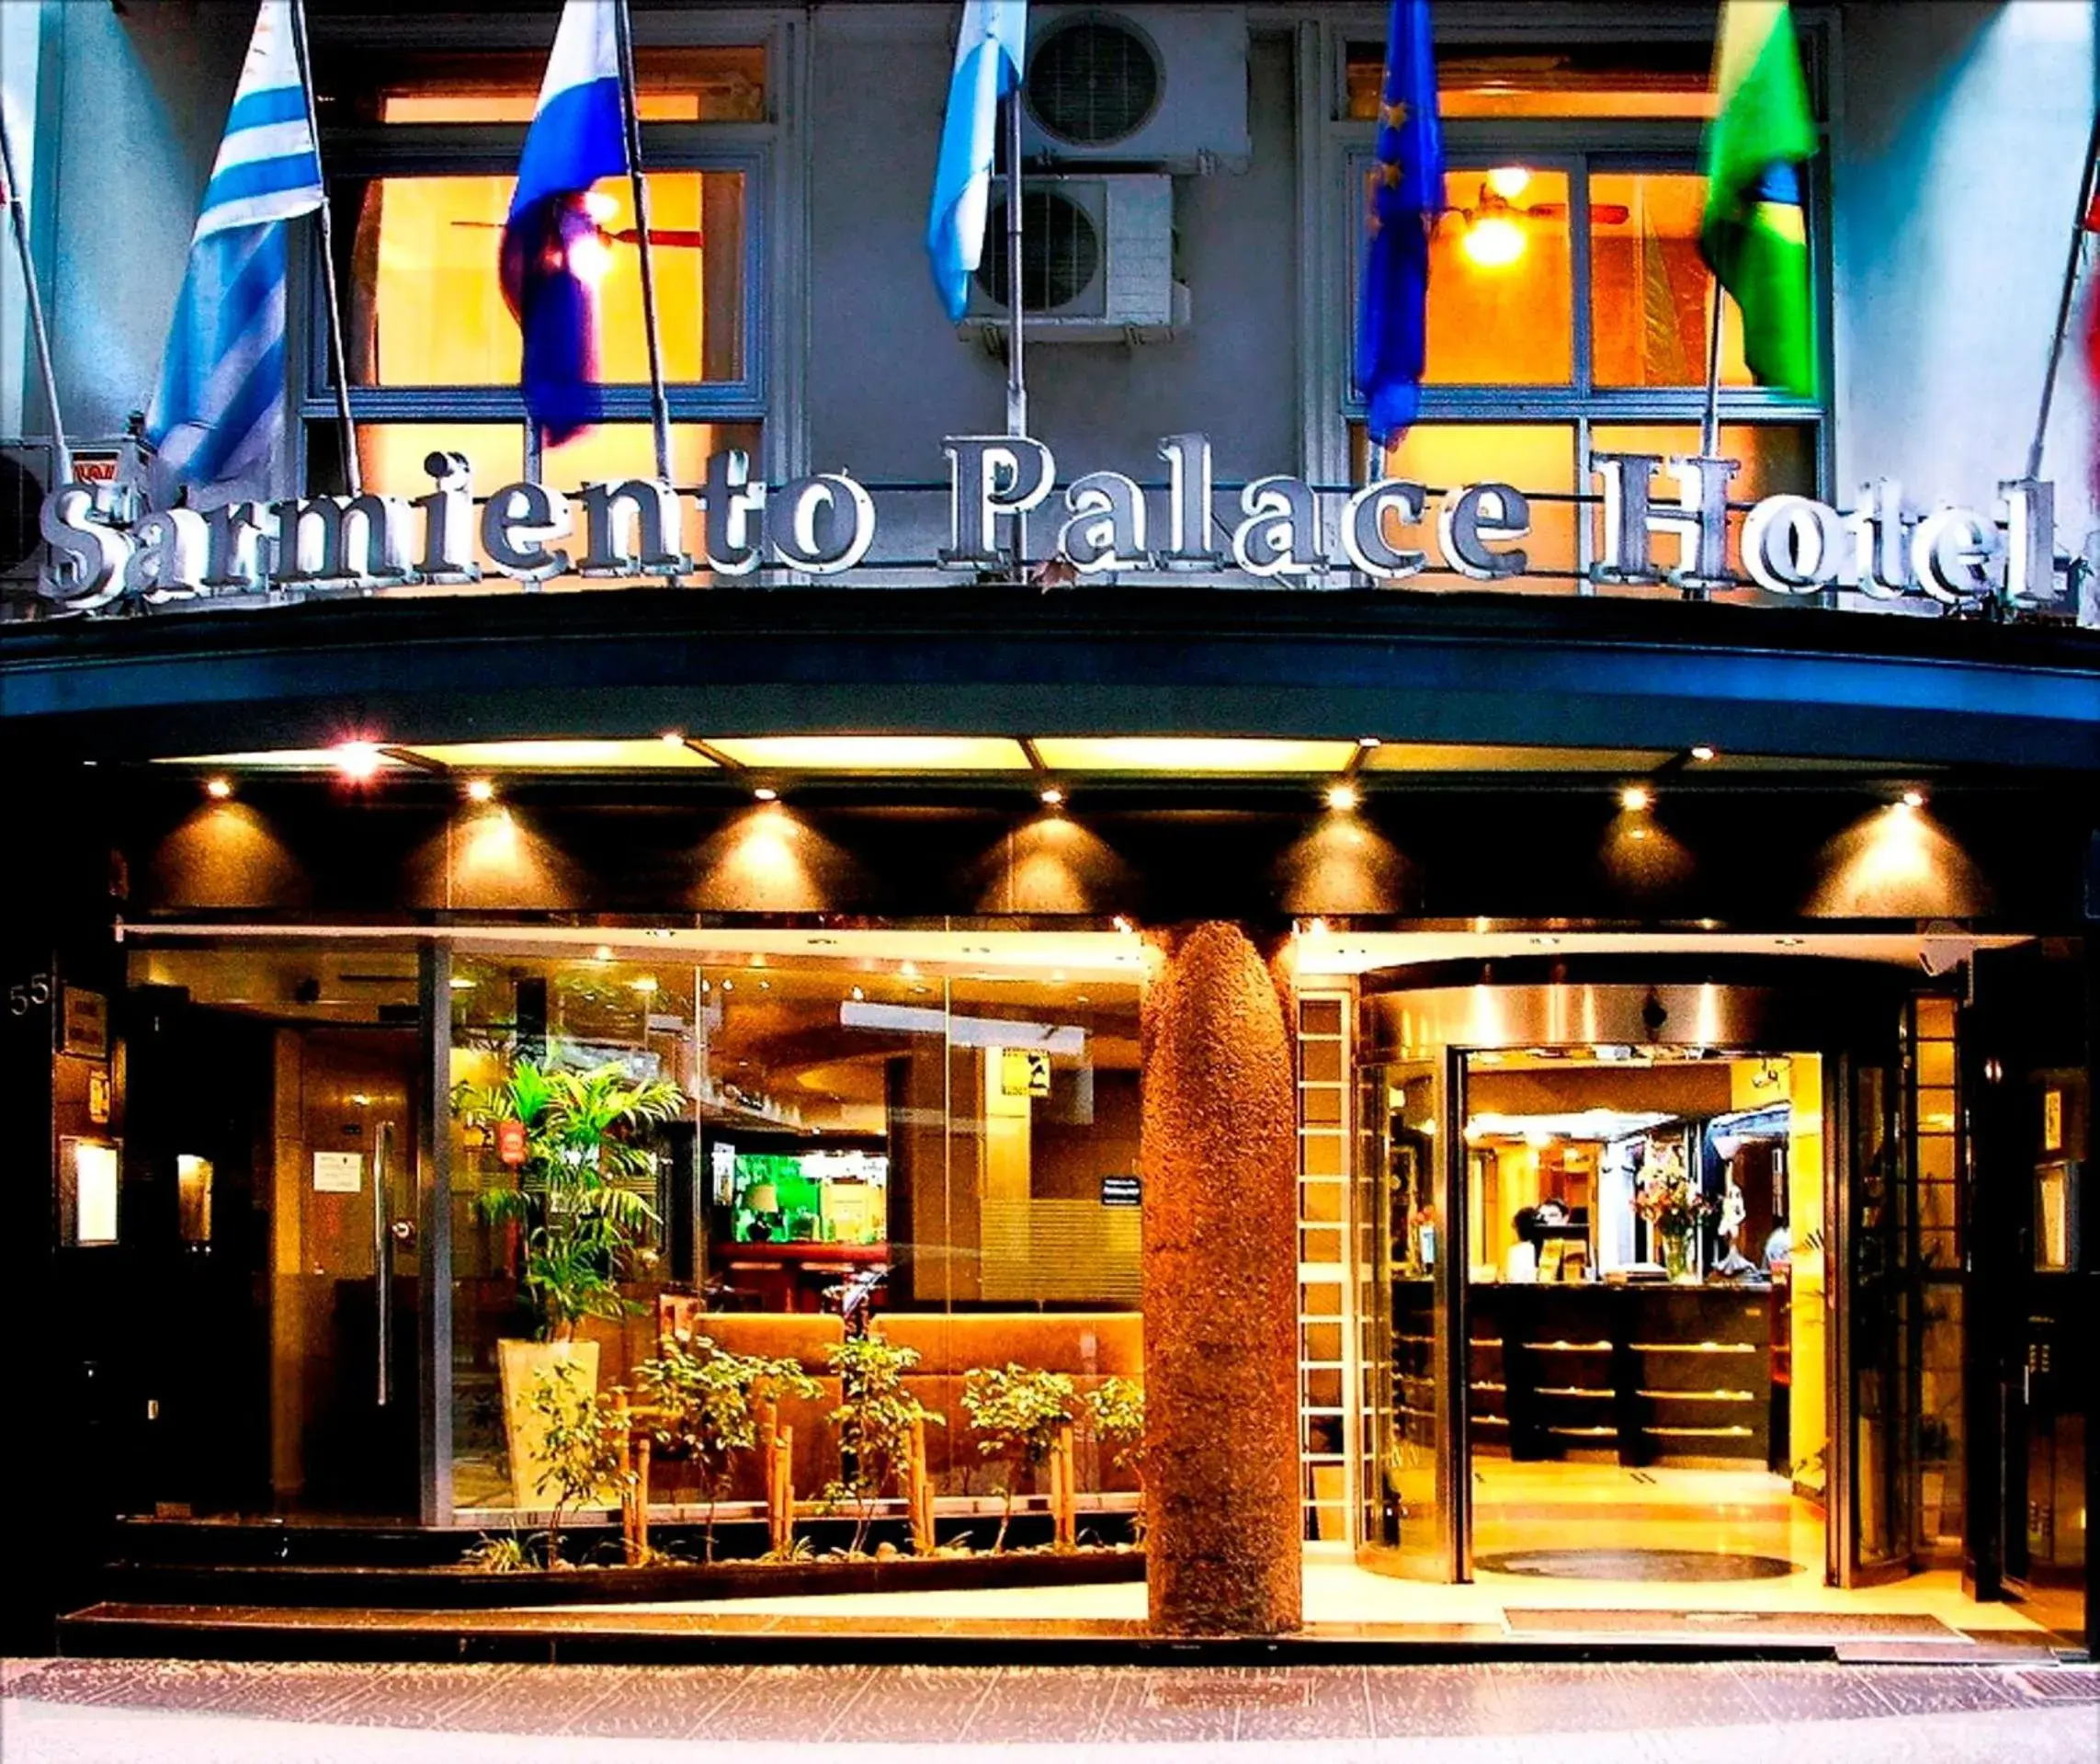 Facade/entrance in Sarmiento Palace Hotel